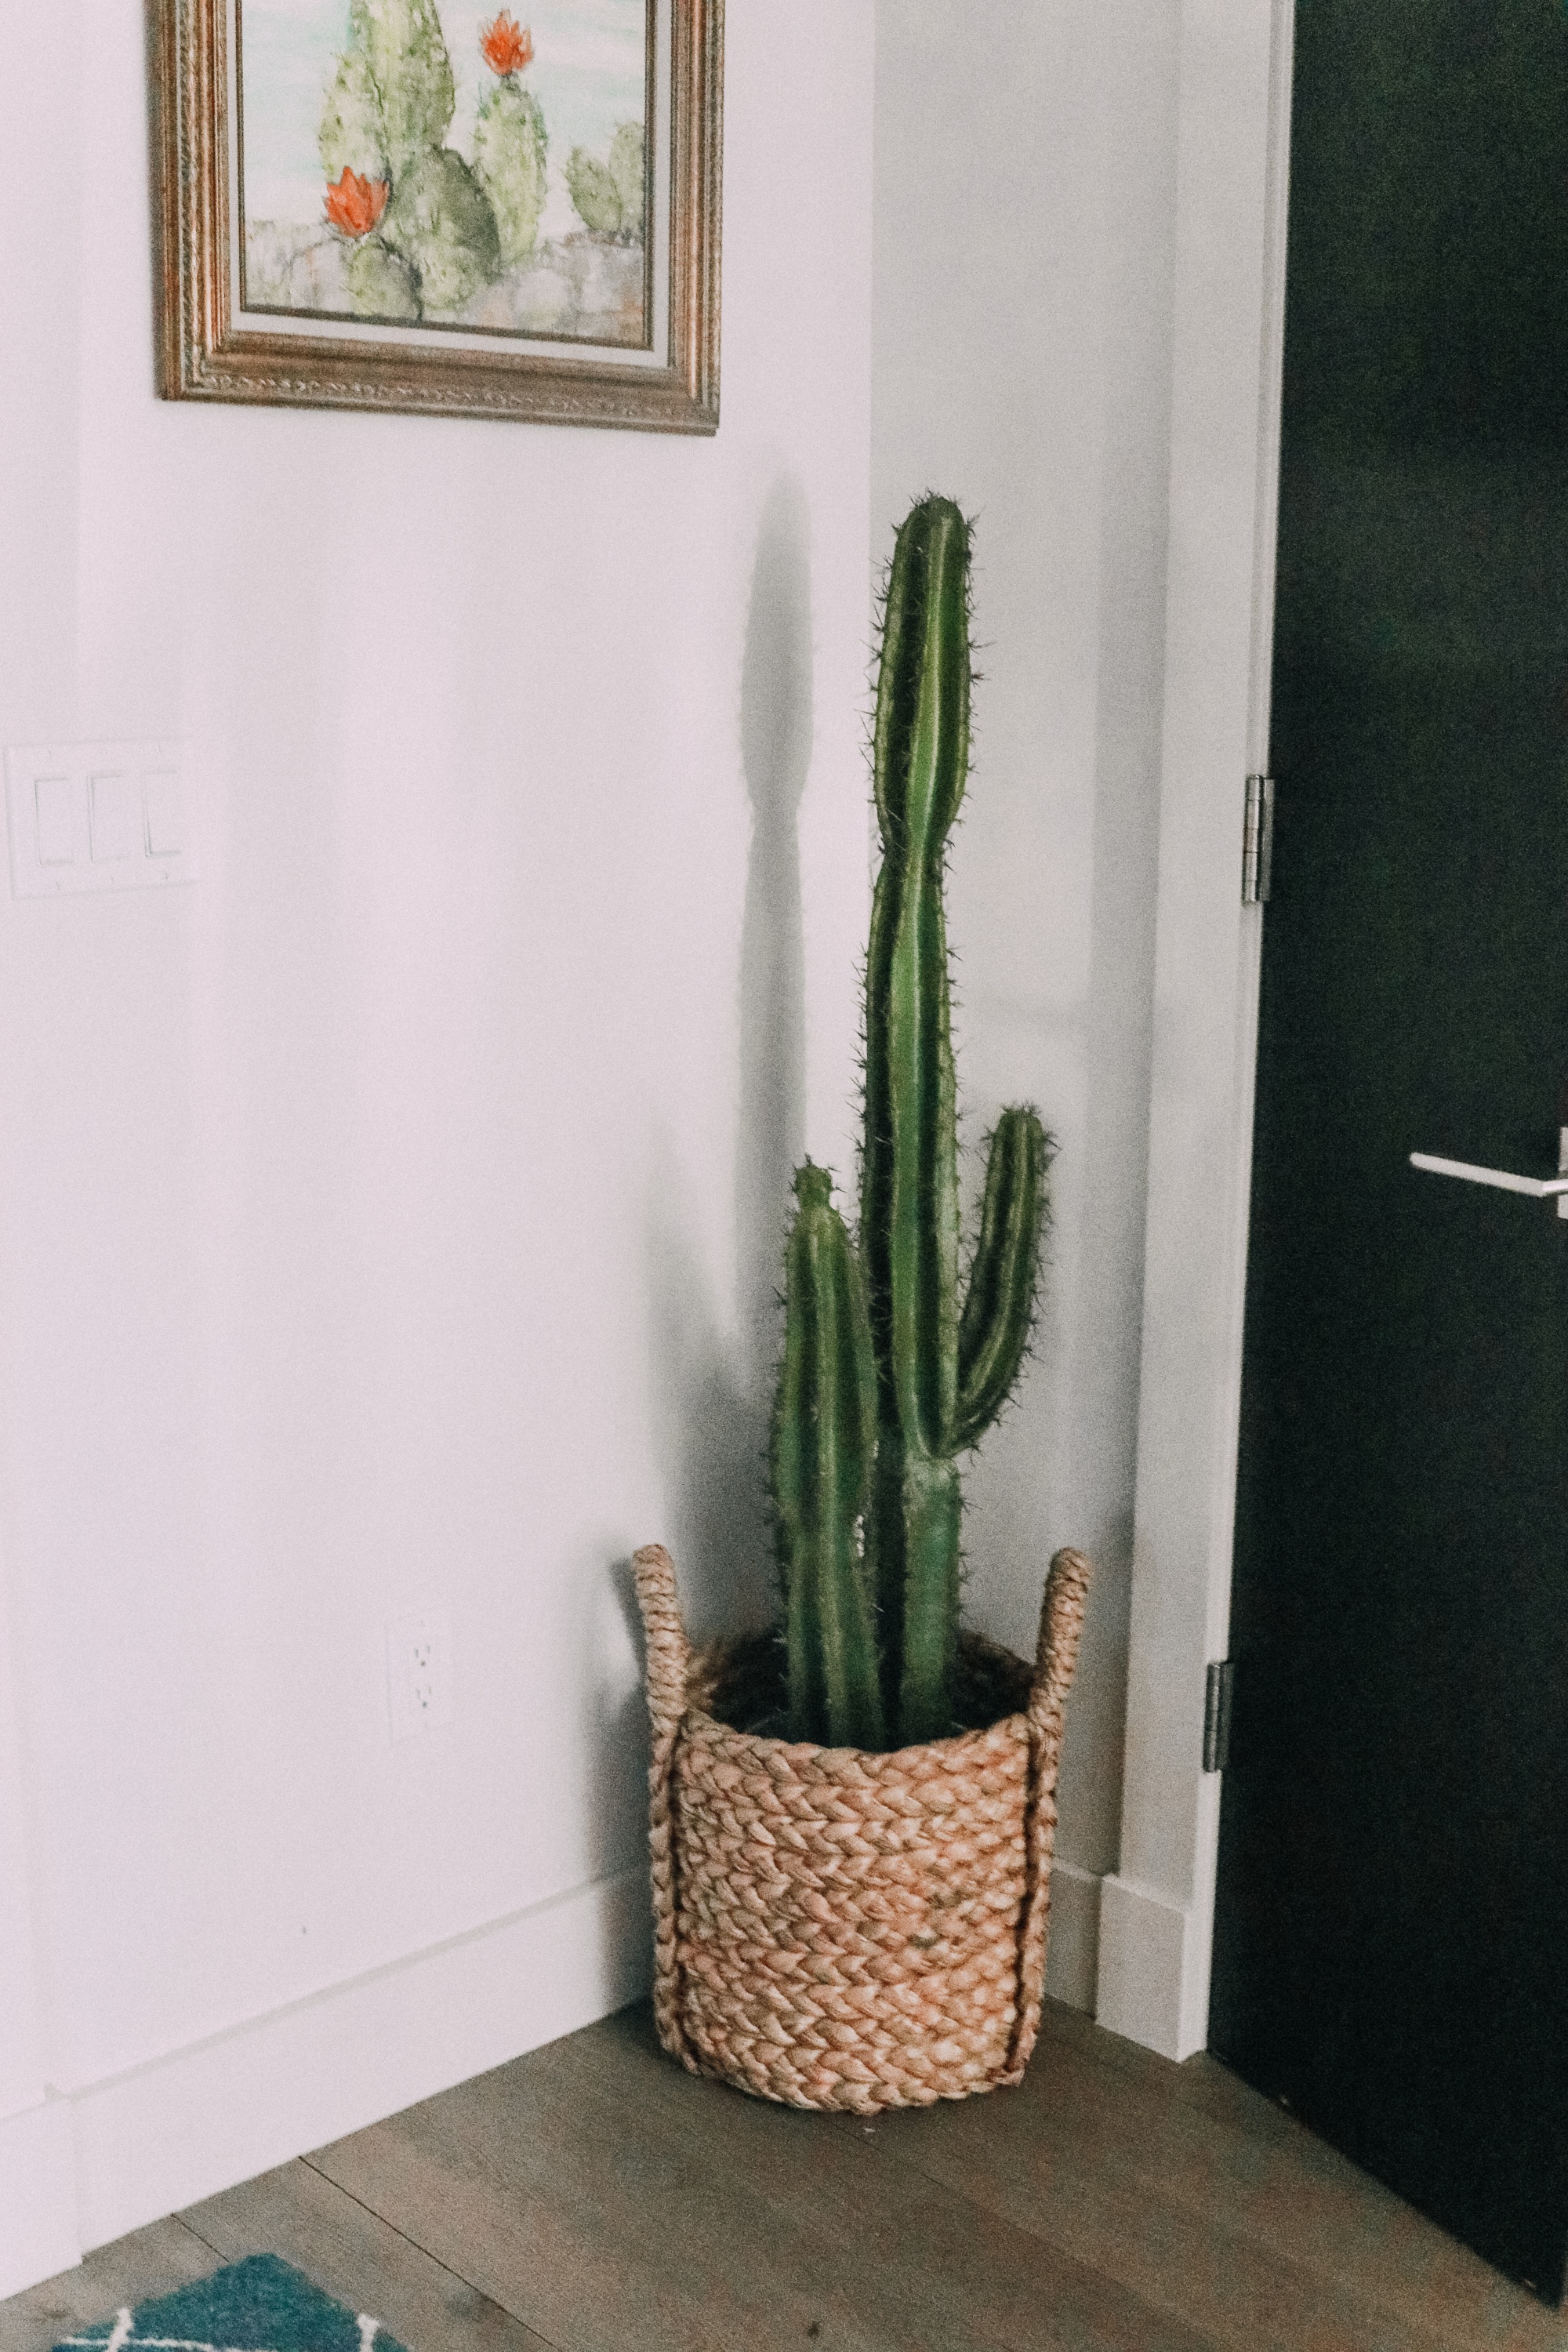 best artificial indoor plants, faux cactus plant in woven basket by front door